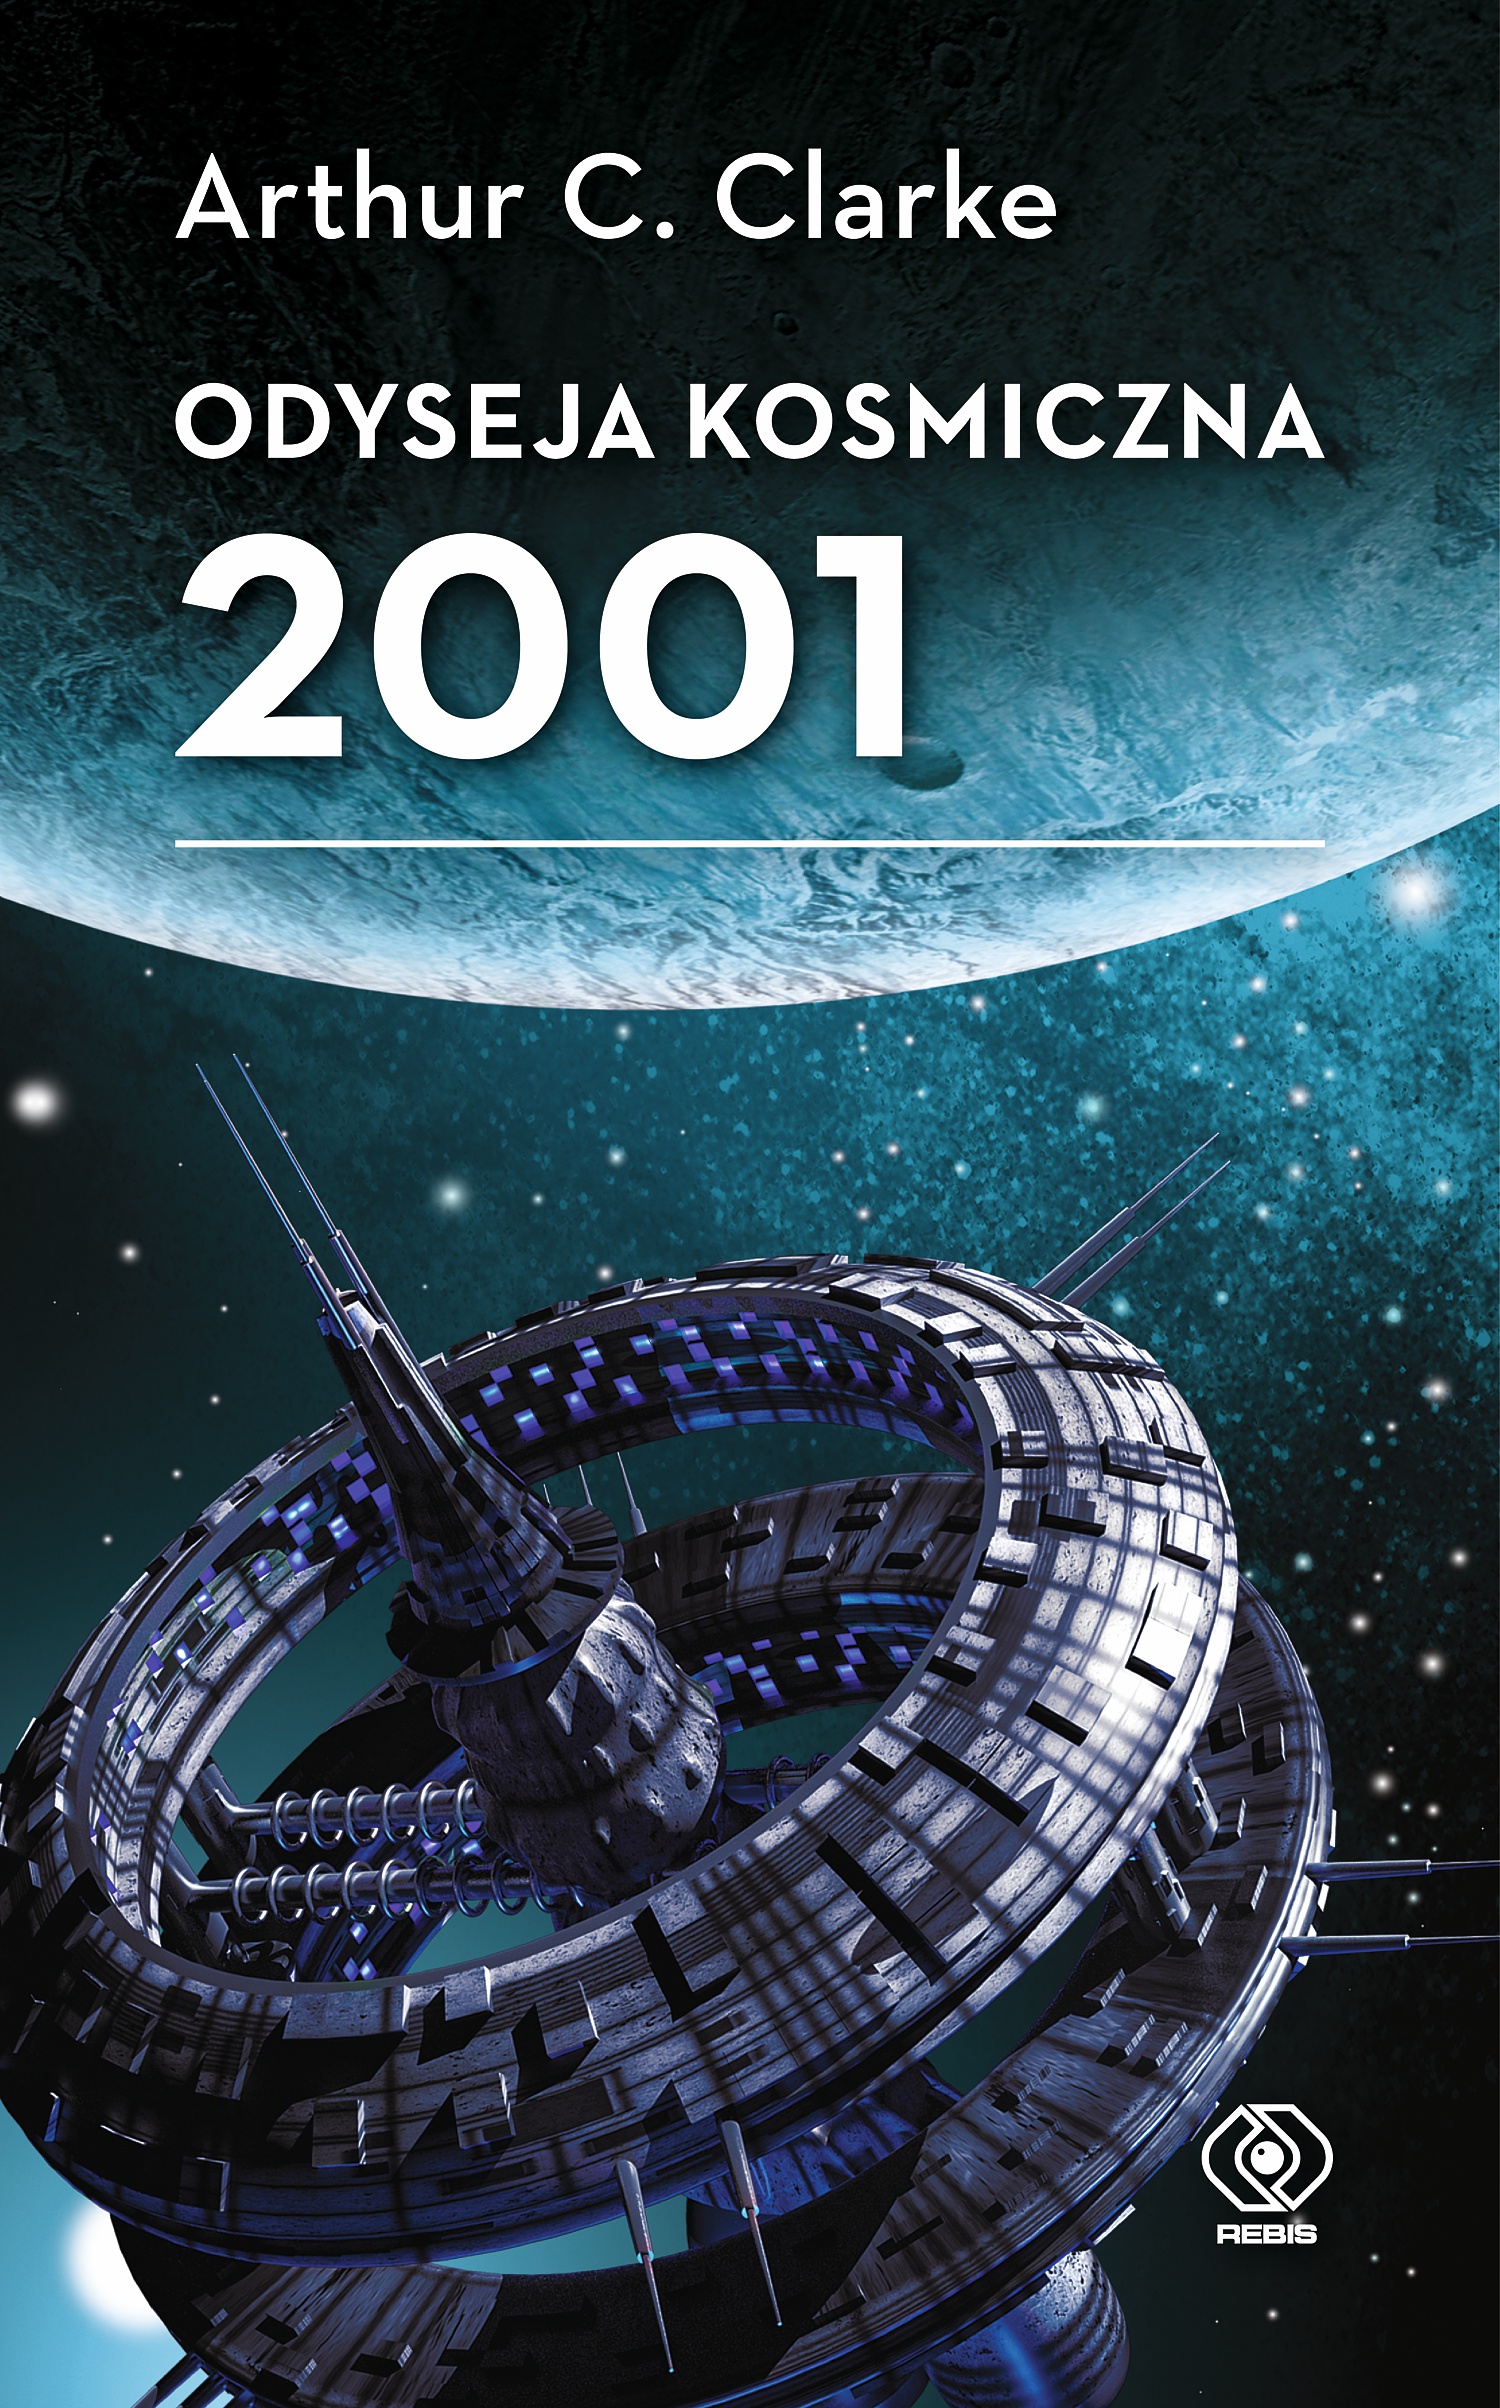 "Odyseja kosmiczna 2001" w nowym tłumaczeniu